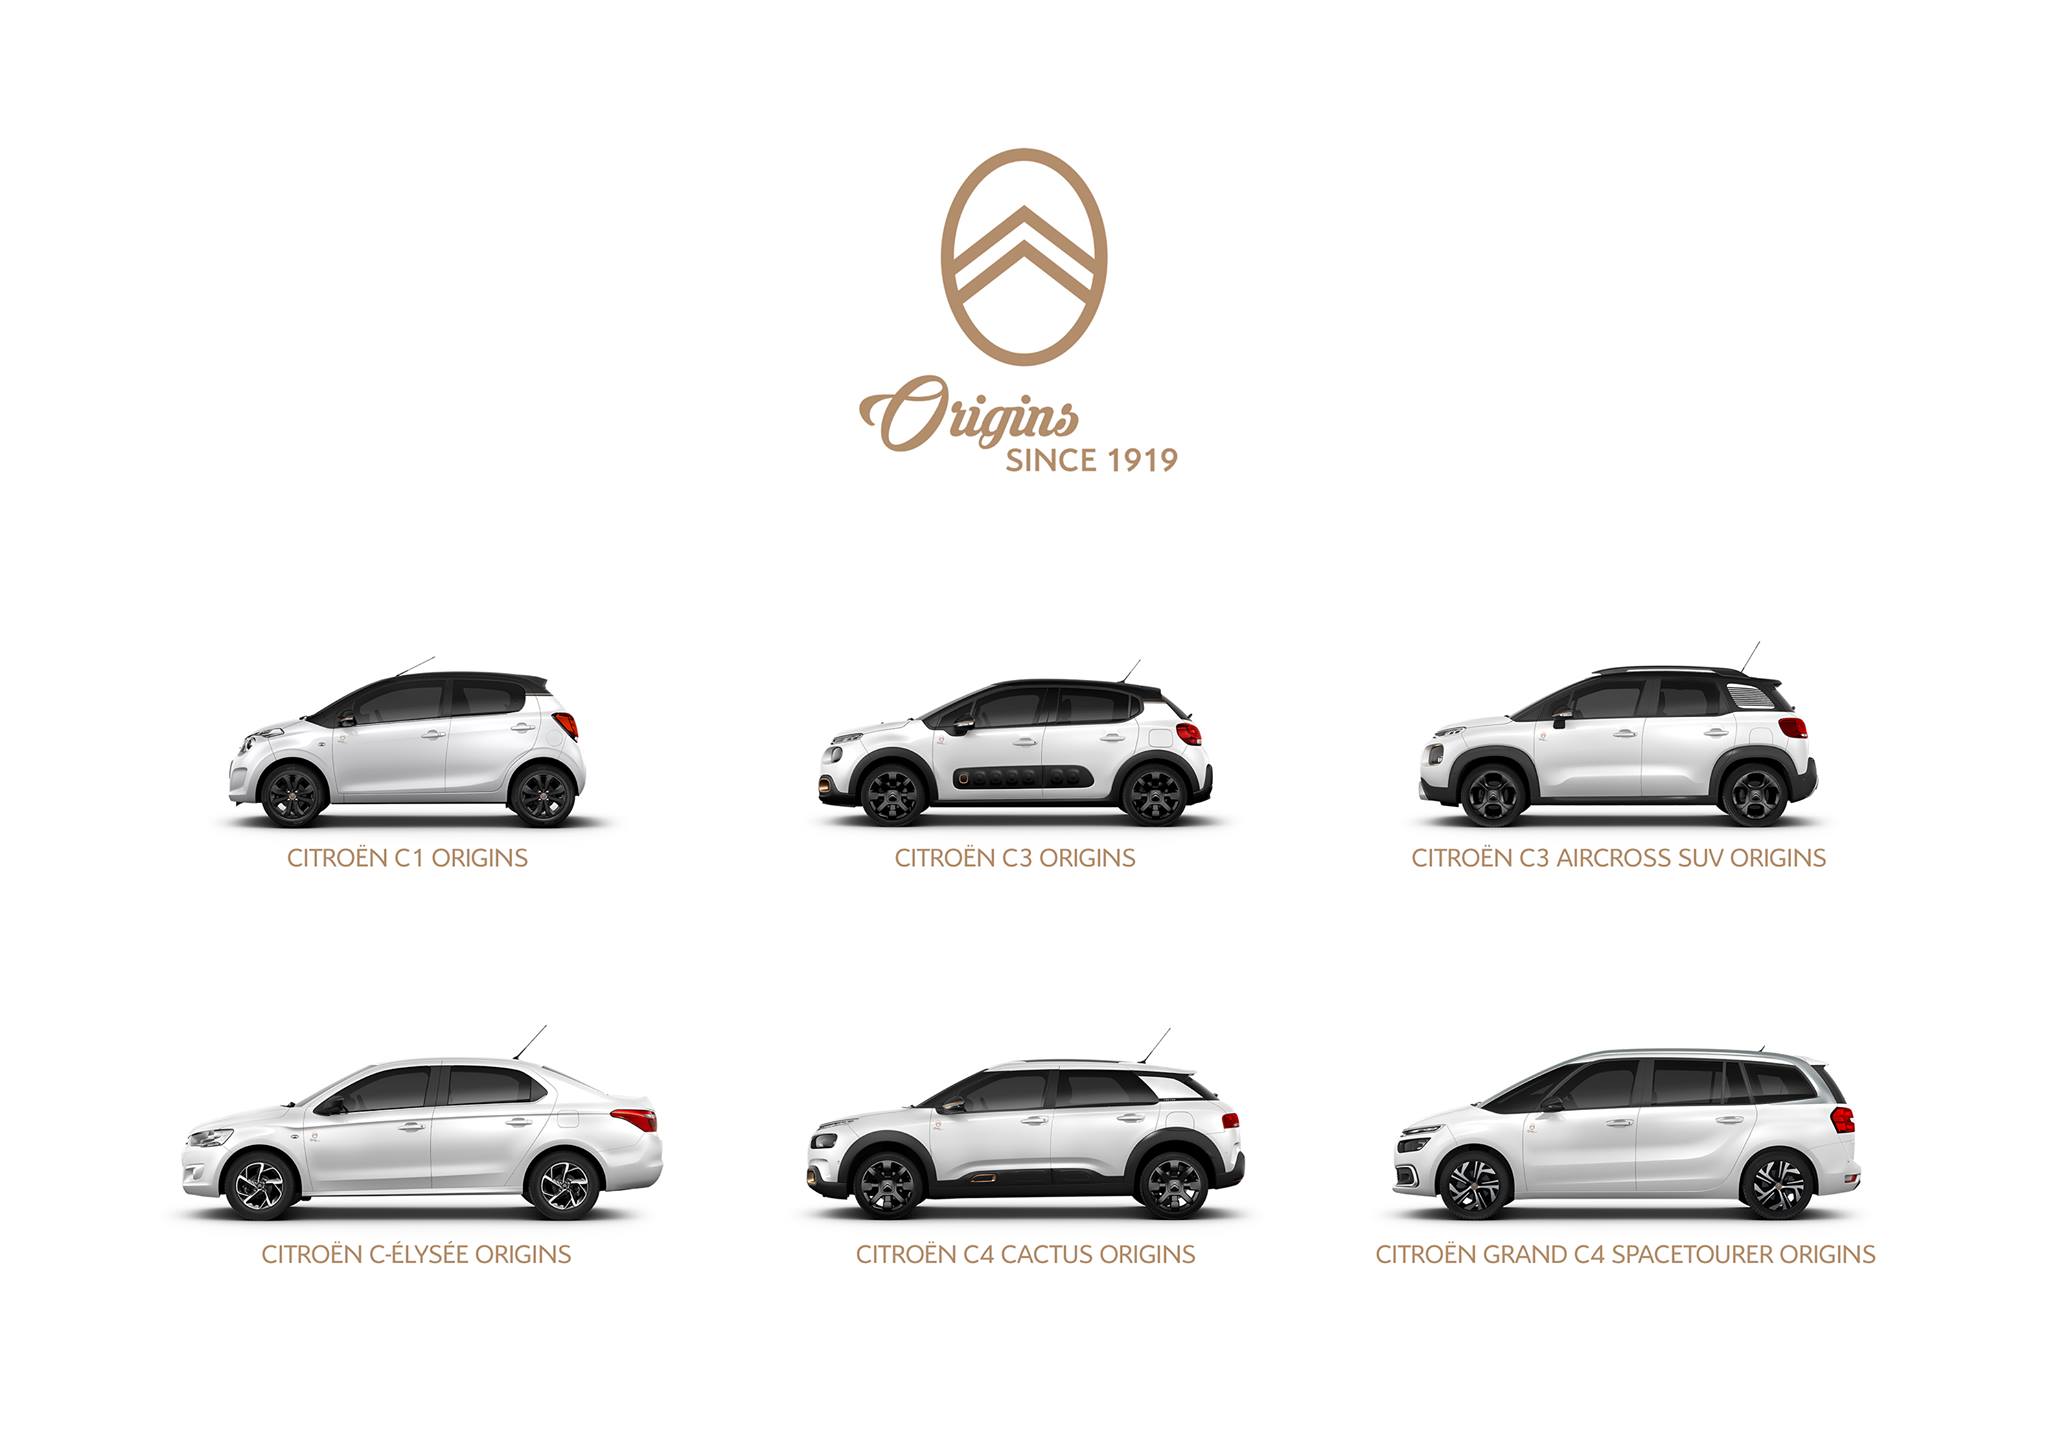 Nowy Citroën Origins 2019 – Specjalna Edycja Modeli C4 Spacetourer, C-Elysee, C4 Cactus, C3 Aircross, C3 I C1 Na 100-Lecie Marki – Francuskie.pl – Dziennik Motoryzacyjny